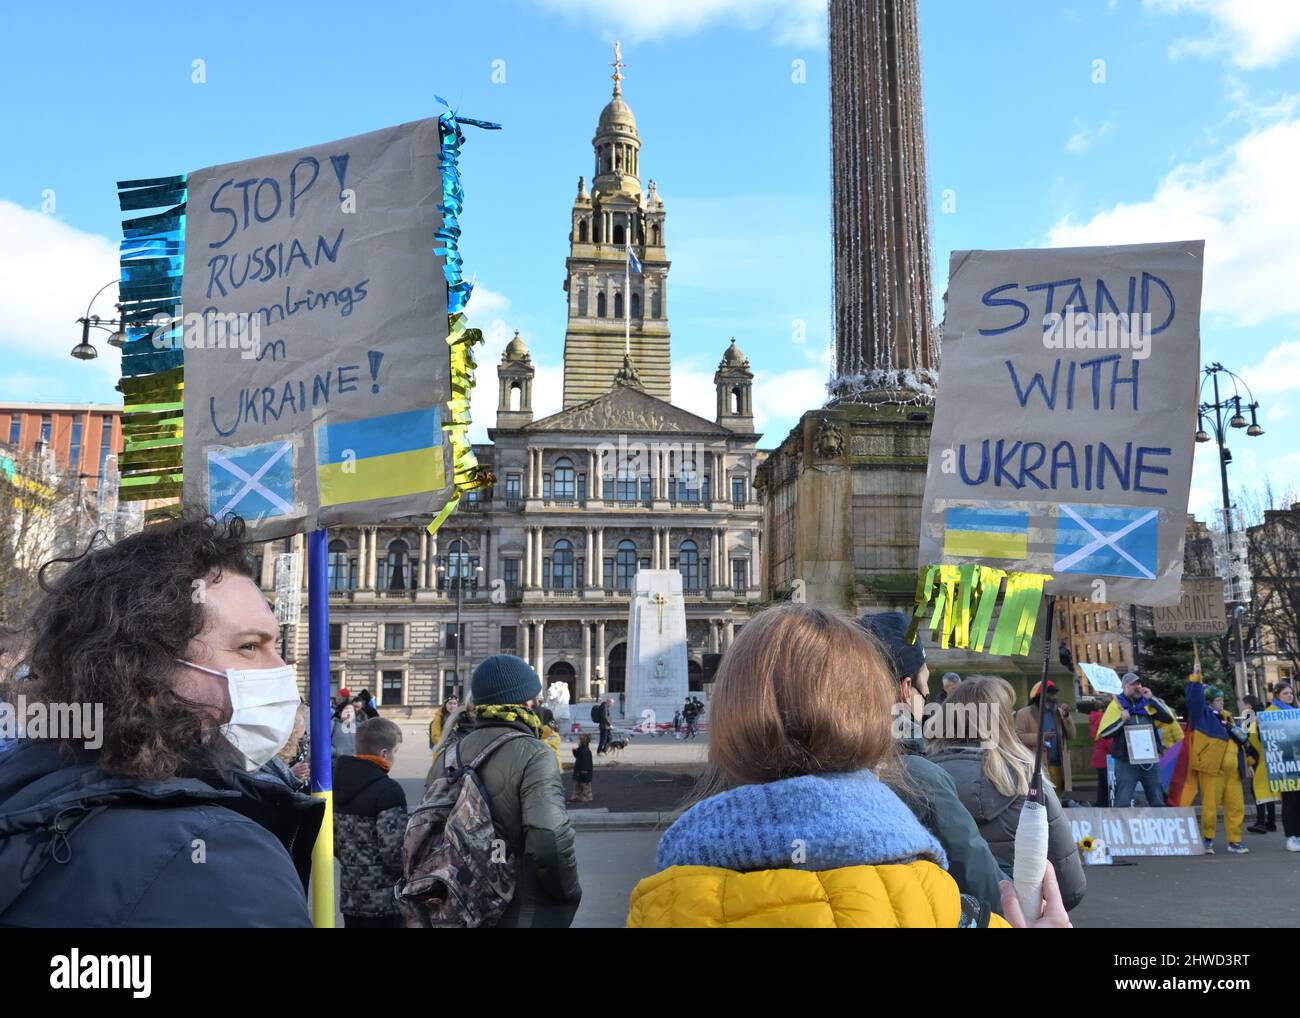 5th, marzo, 2022. Glasgow, Escocia, Reino Unido. Ucrania protesta. La gente se reúne en George Square, Glasgow, para protestar por la invasión rusa y el ataque de Ucrania en Europa del Este. Crédito. Douglas Carr/Alamy Live News Foto de stock